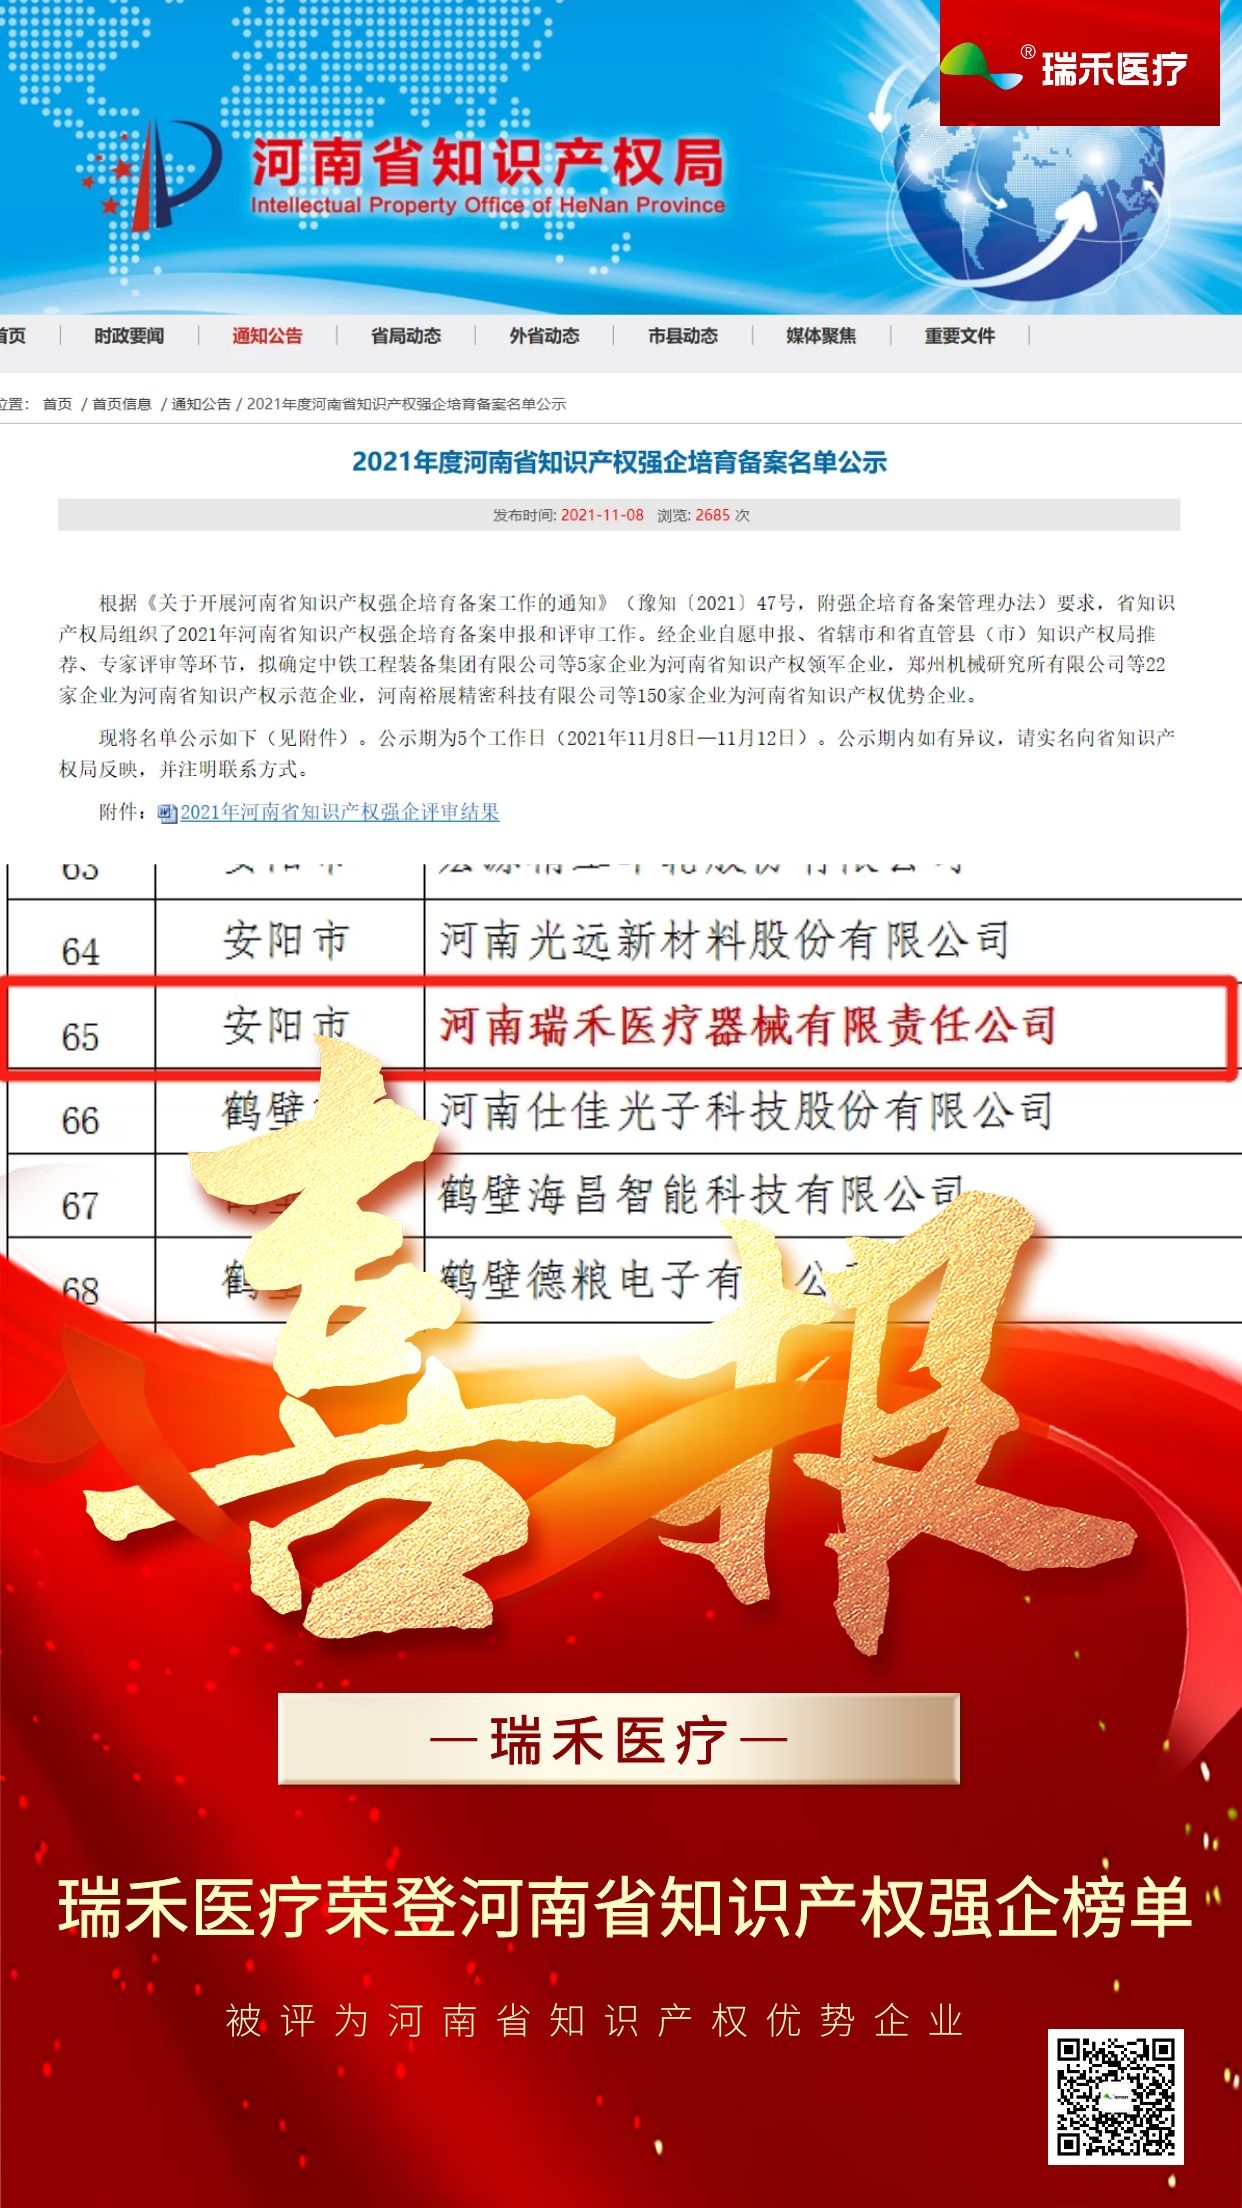 近日，河南省知识产权局公布了2021年河南省知识产权强企培育备案申报和评审工作。瑞禾医疗获评为河南省知识产权优势企业。